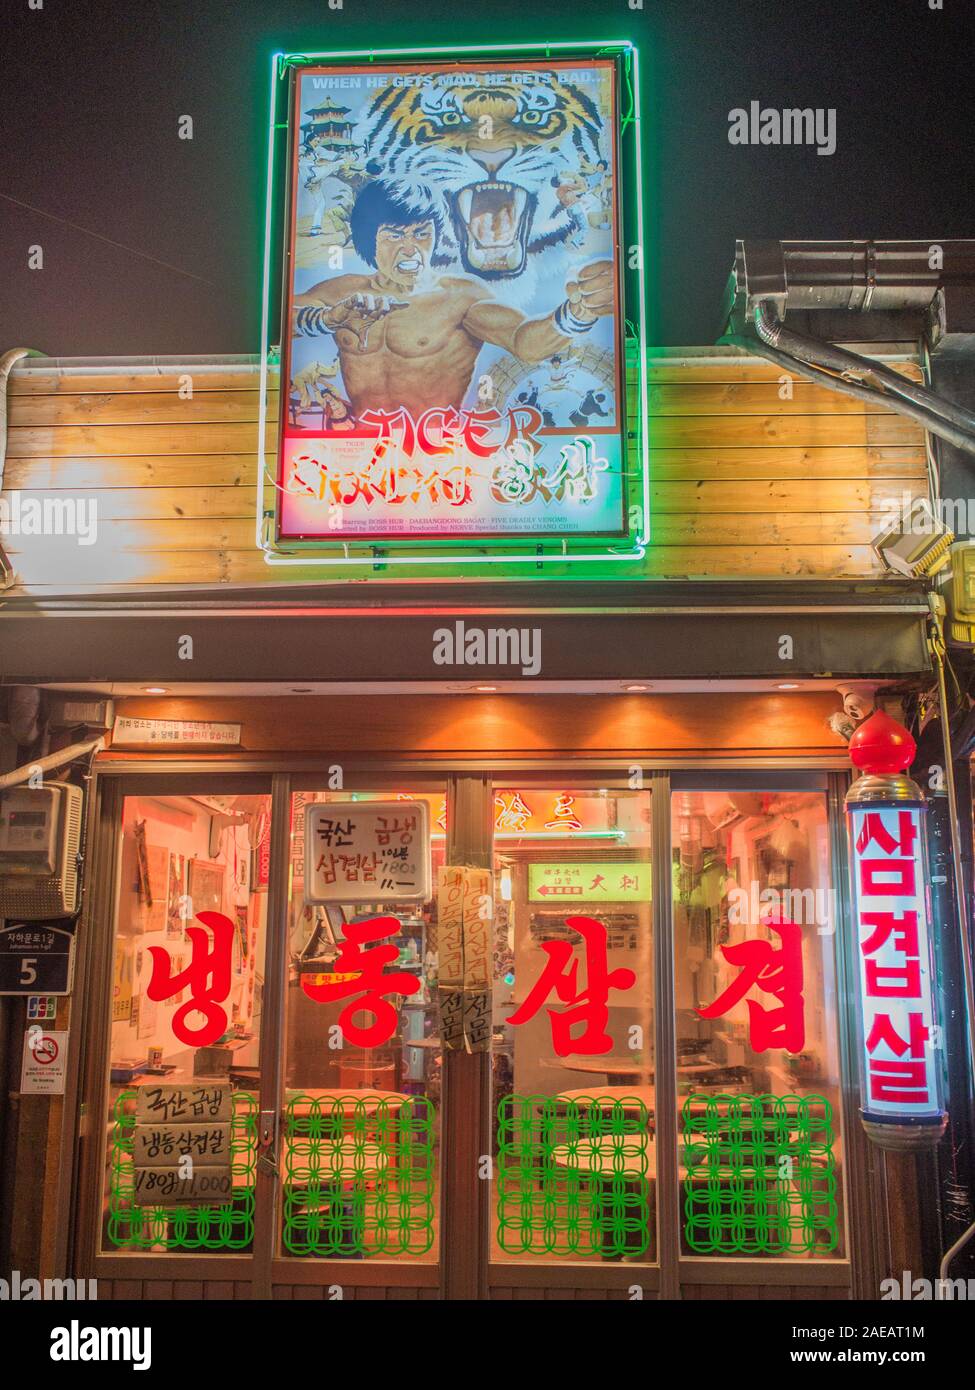 Restaurant, avec film de kung fu advertisment signe, fenêtre avec les caractères chinois rouge, près de la rue de nuit station Gyeongbokgung, Séoul, Corée du Sud. Banque D'Images